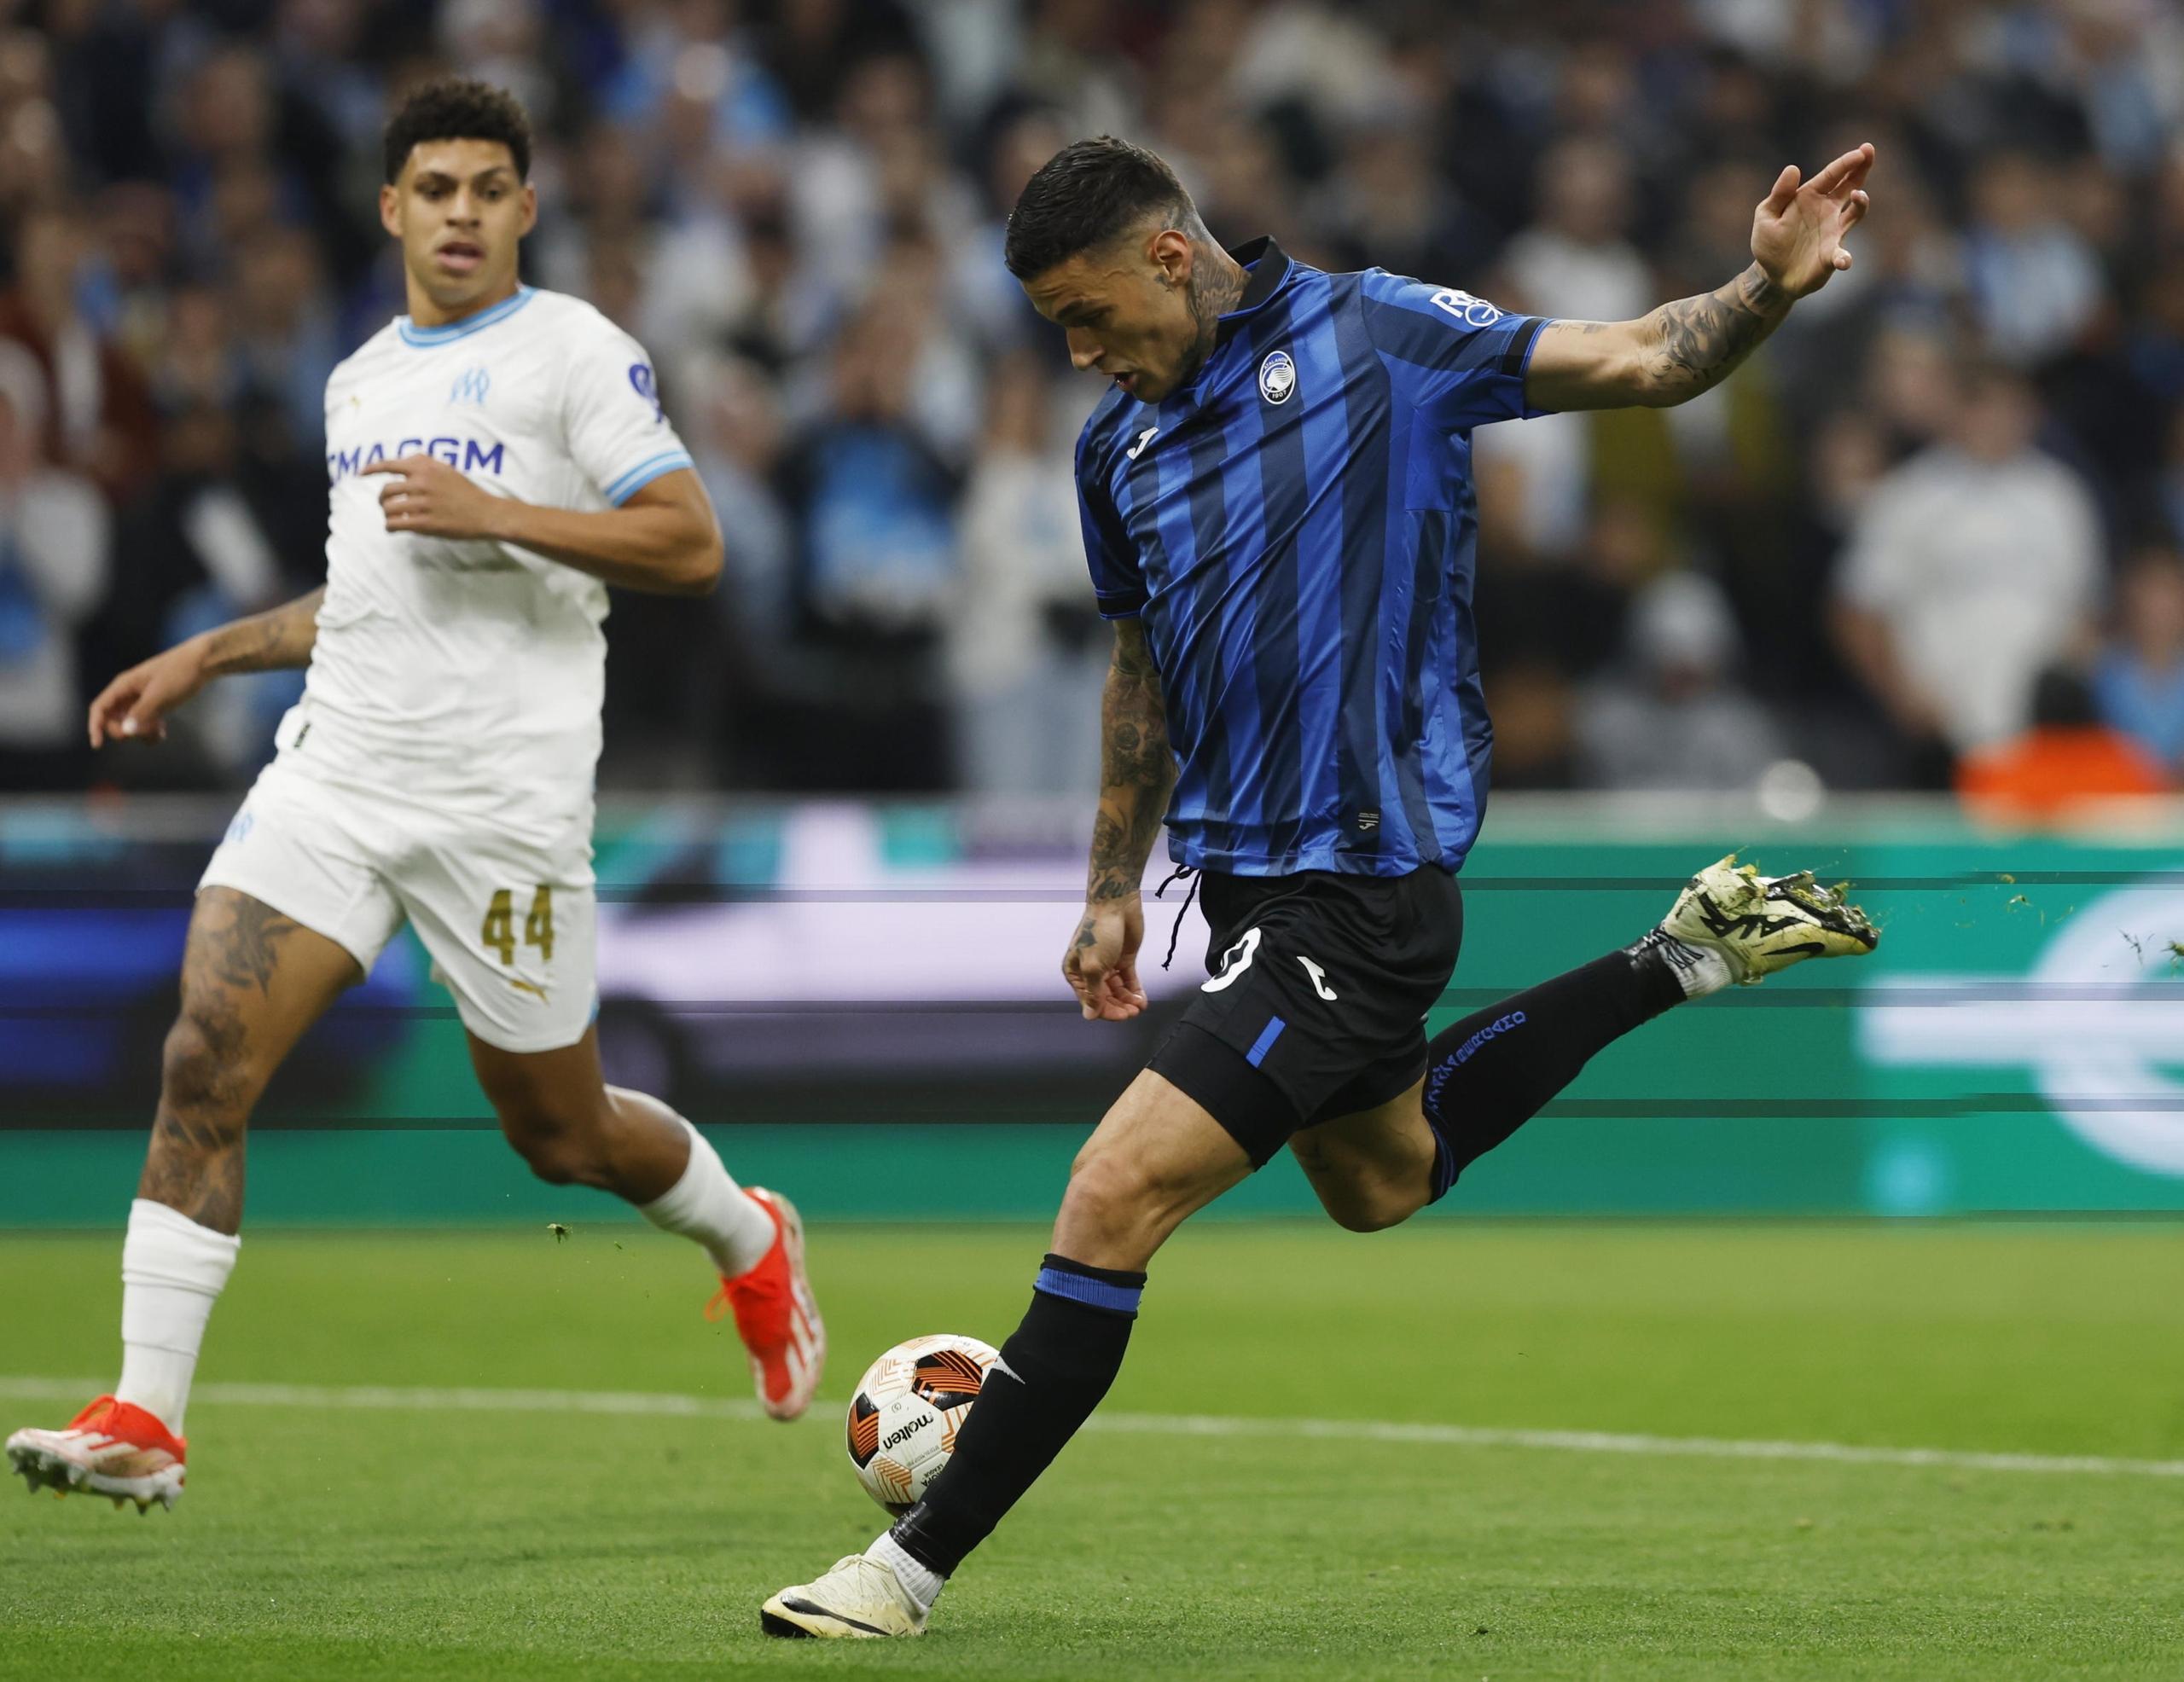 Europa League, semifinali di ritorno in tv: Roma per la remuntada, l’Atalanta riparte dal pari